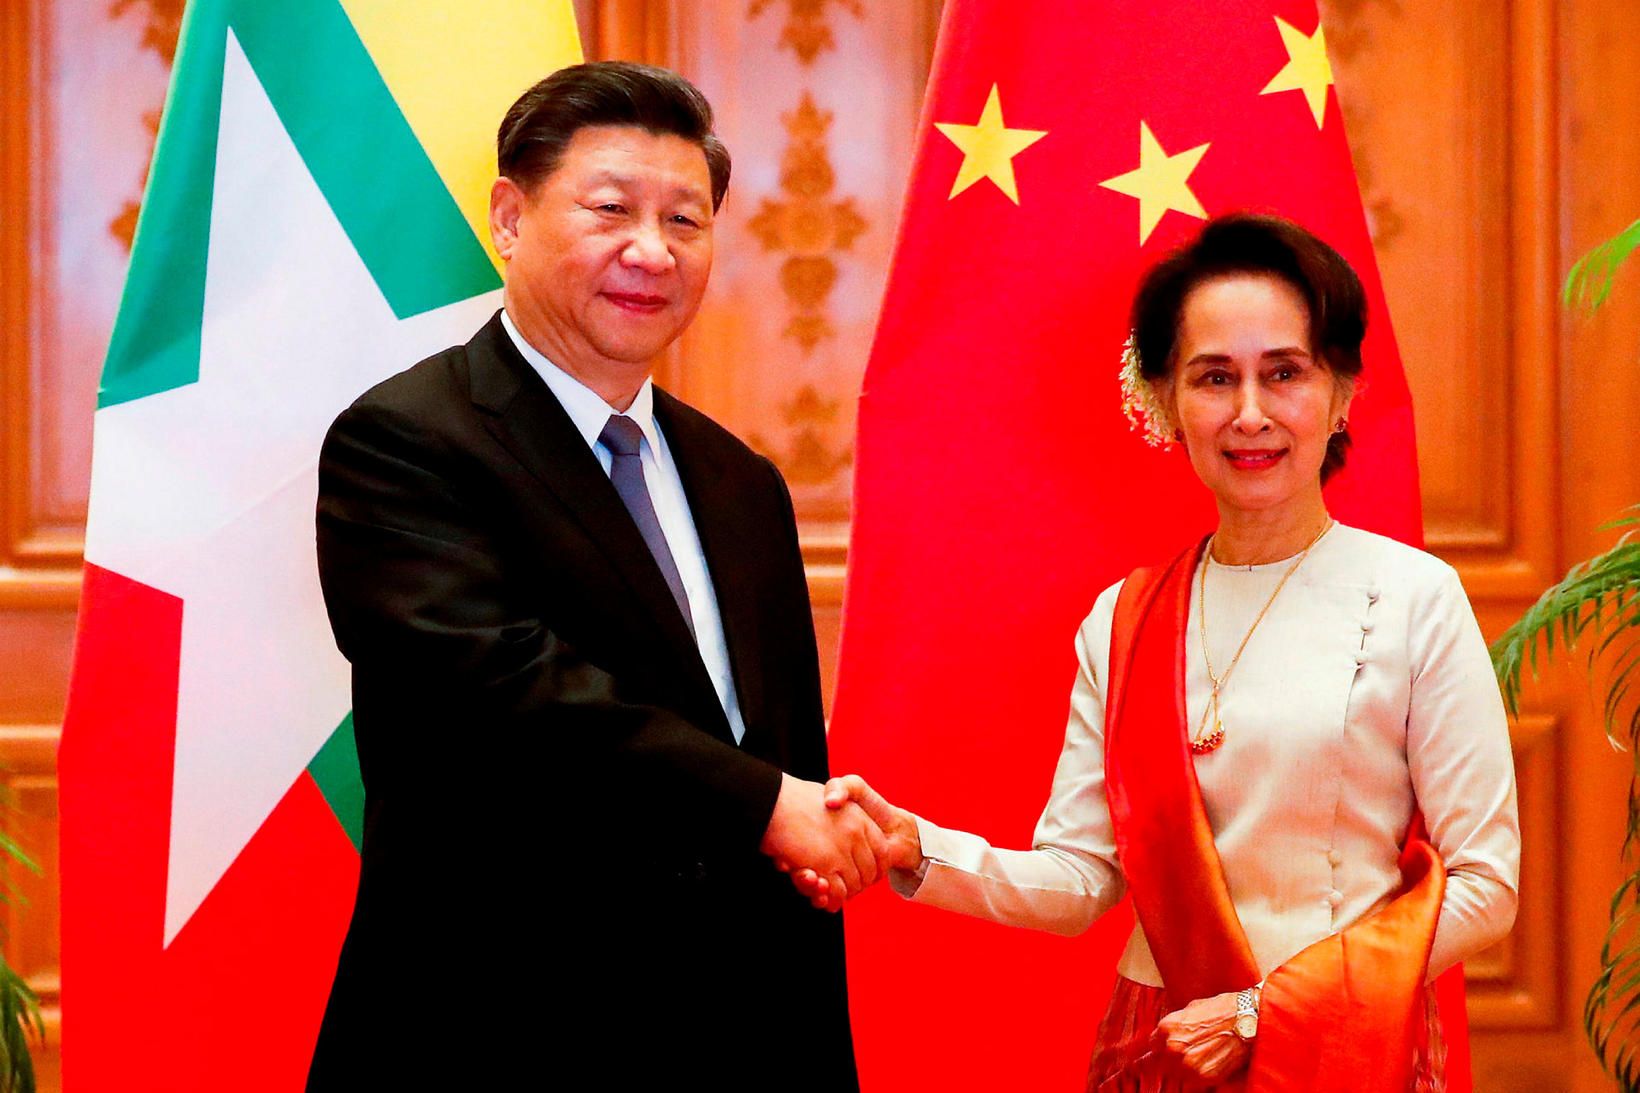 Xi Jinping, forseti Kína, og Aung San Suu Kyi heilsast …